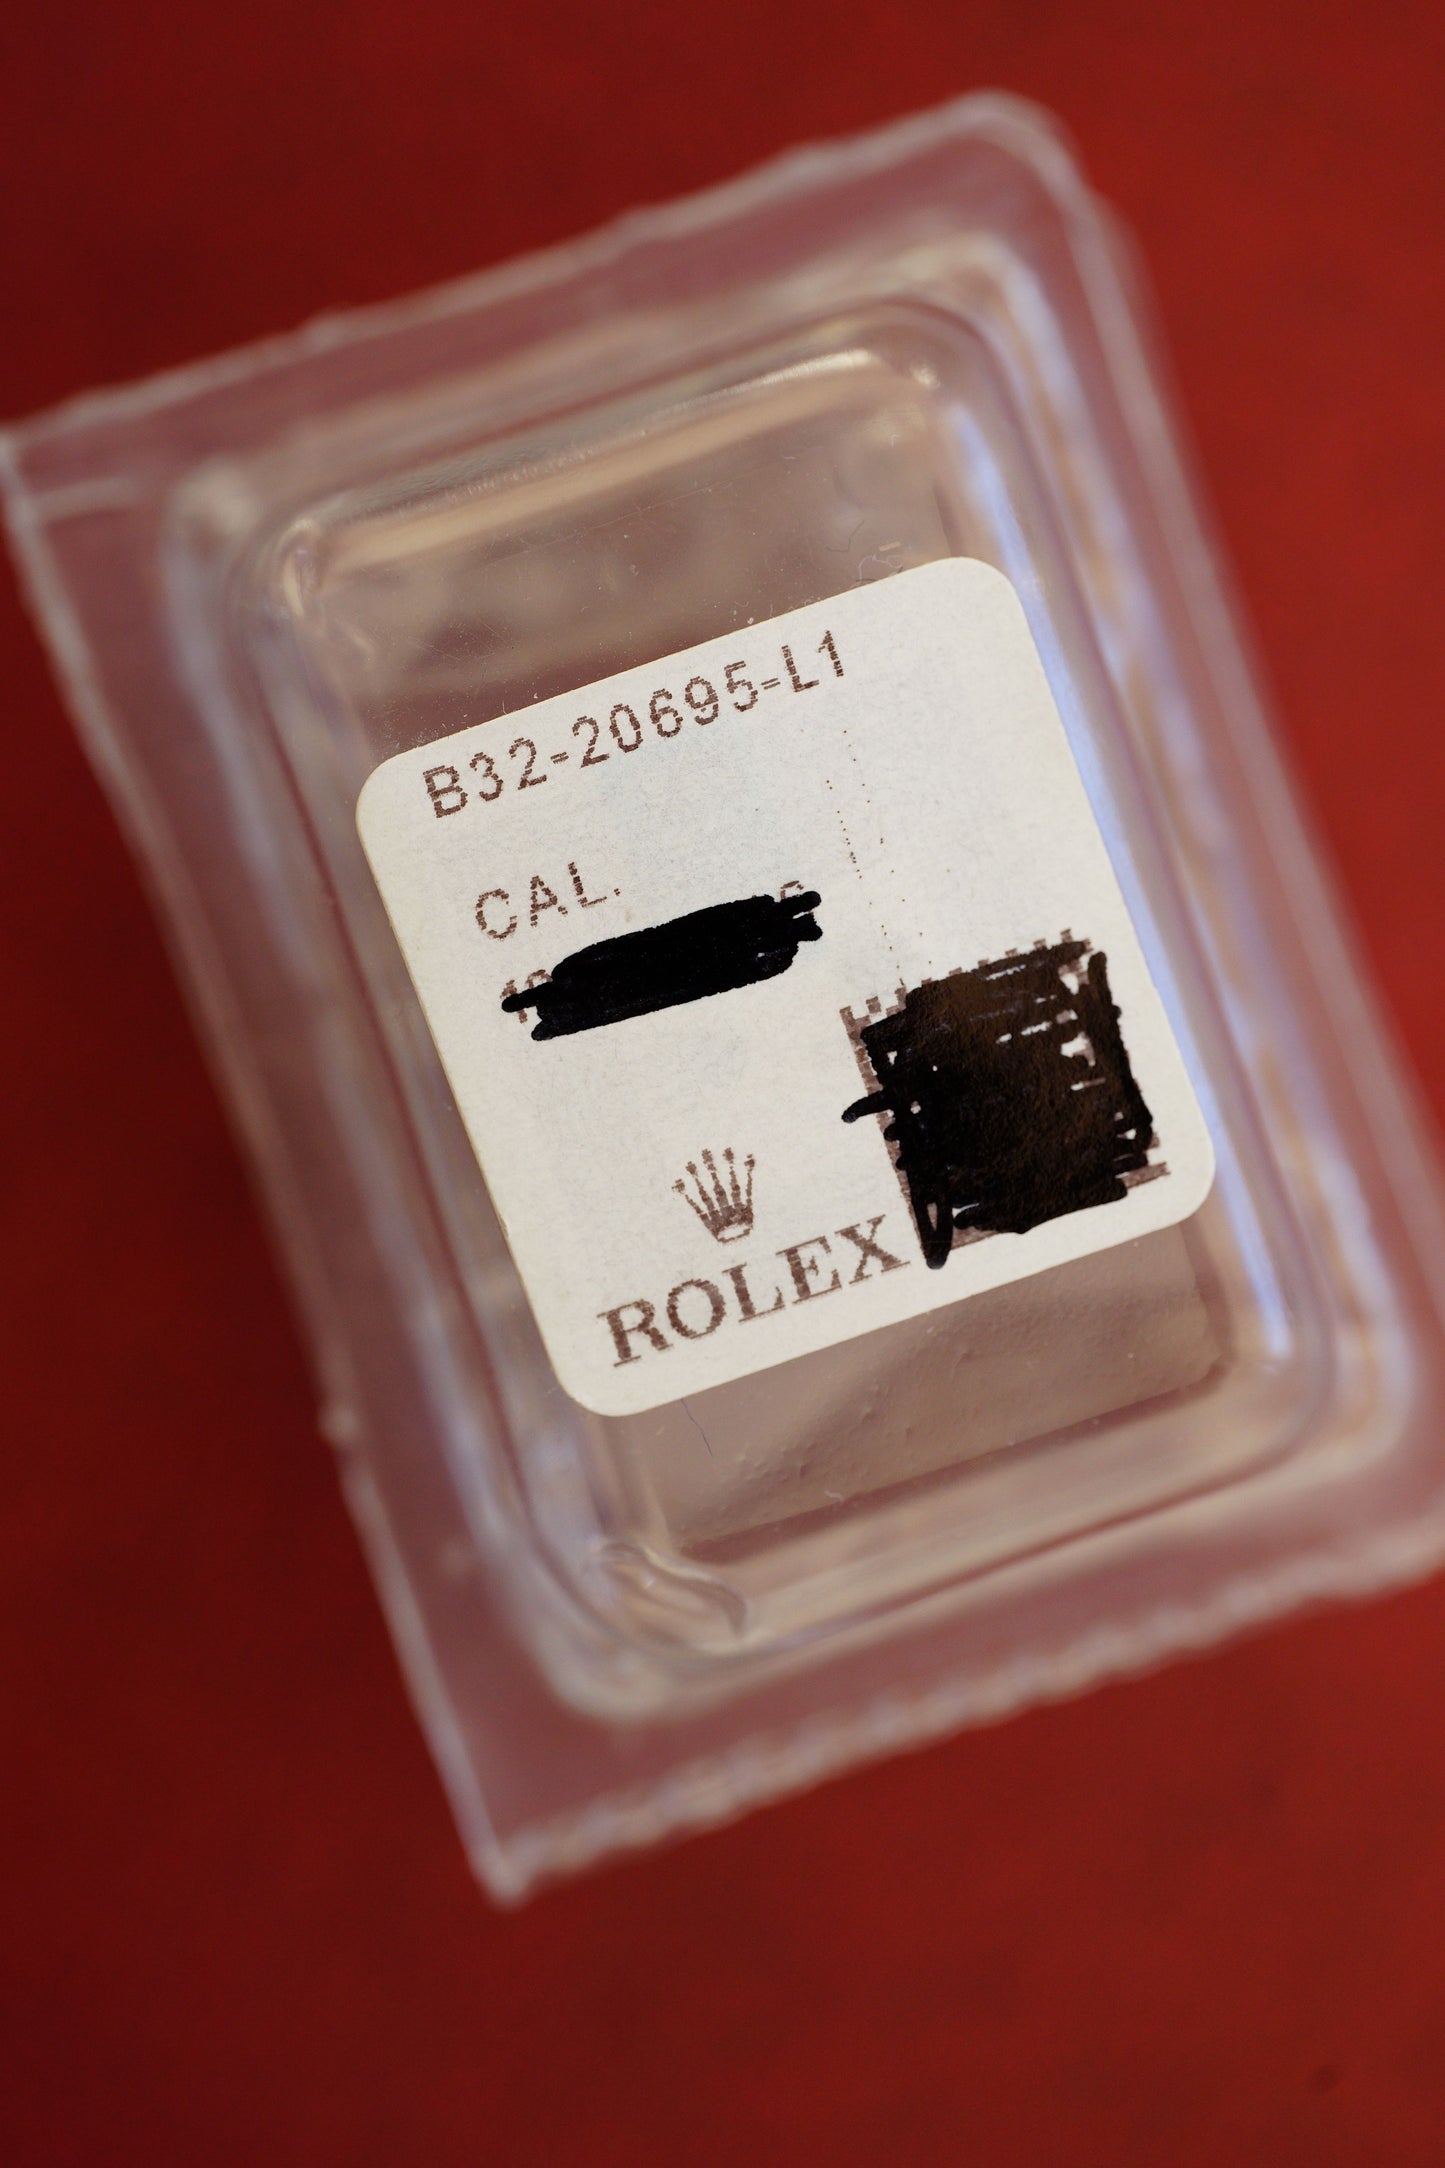 Rolex NOS Oyster stahl/gold Ersatzglied 15,5mm B32-20695-L1 für 16613 | 16713 | 16523 (steel/gold Link)